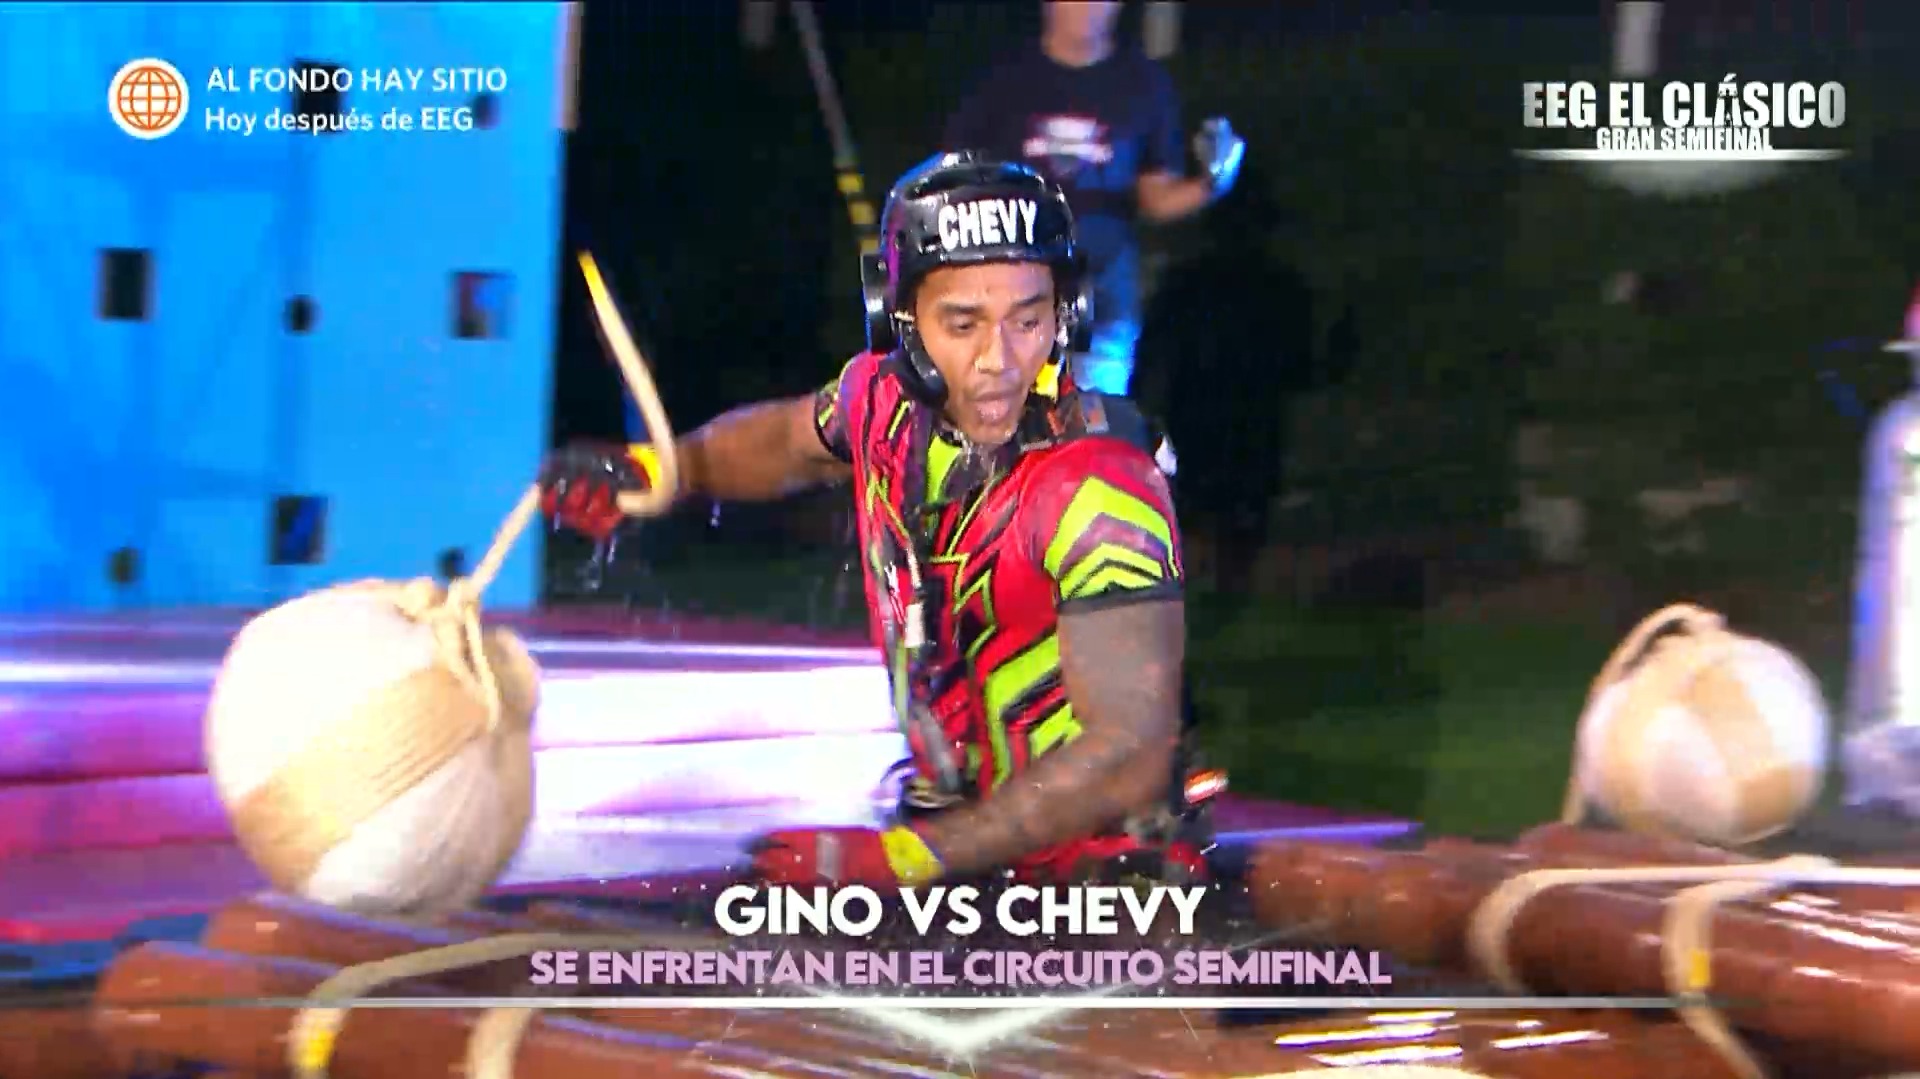 Chevy superó todos los obstáculos en circuito extremo de la semifinal de EEG. Fuente: AméricaTV